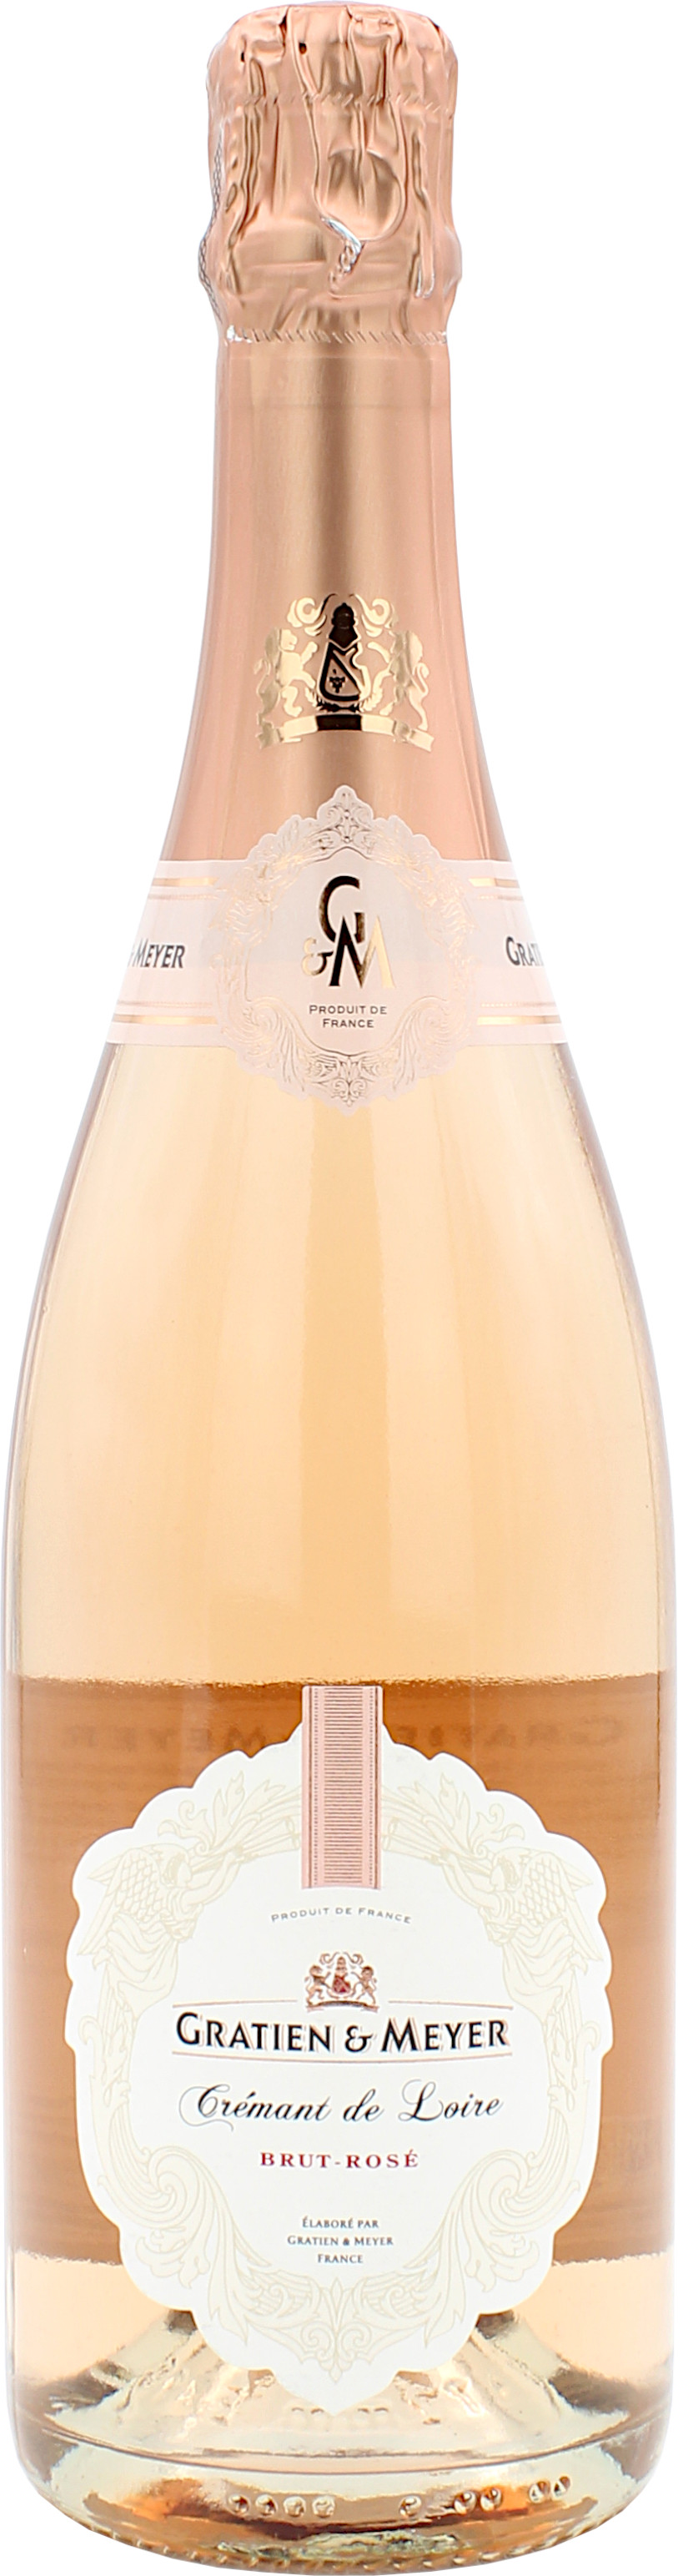 Gratien & Meyer Crémant de Loire Brut Rosé 12.0% 0,75l